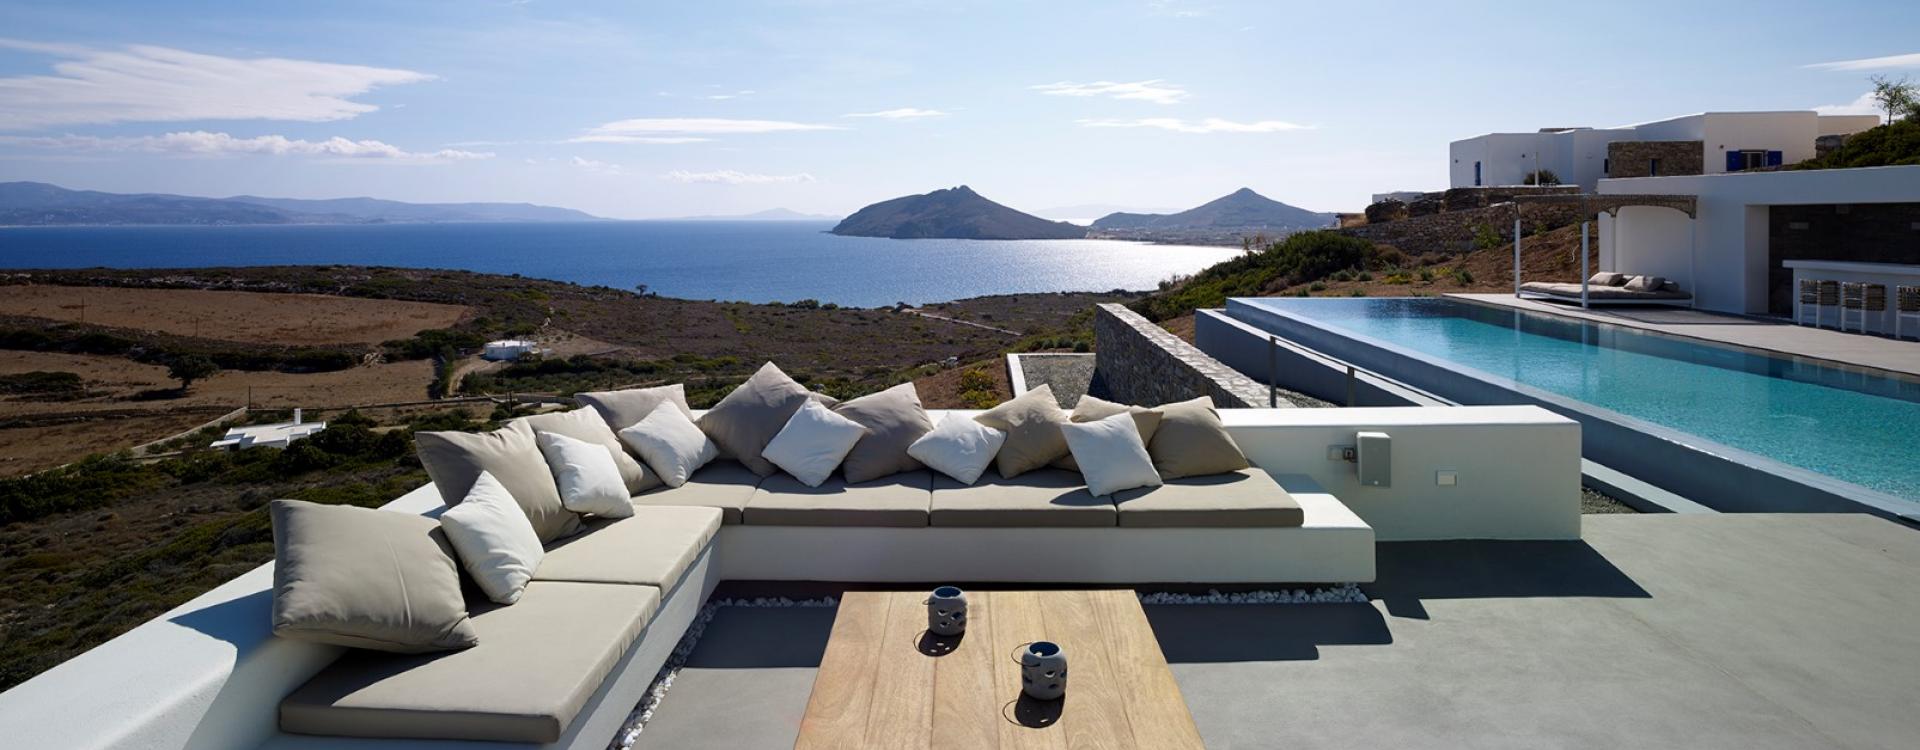 Great views villa in Paros island 